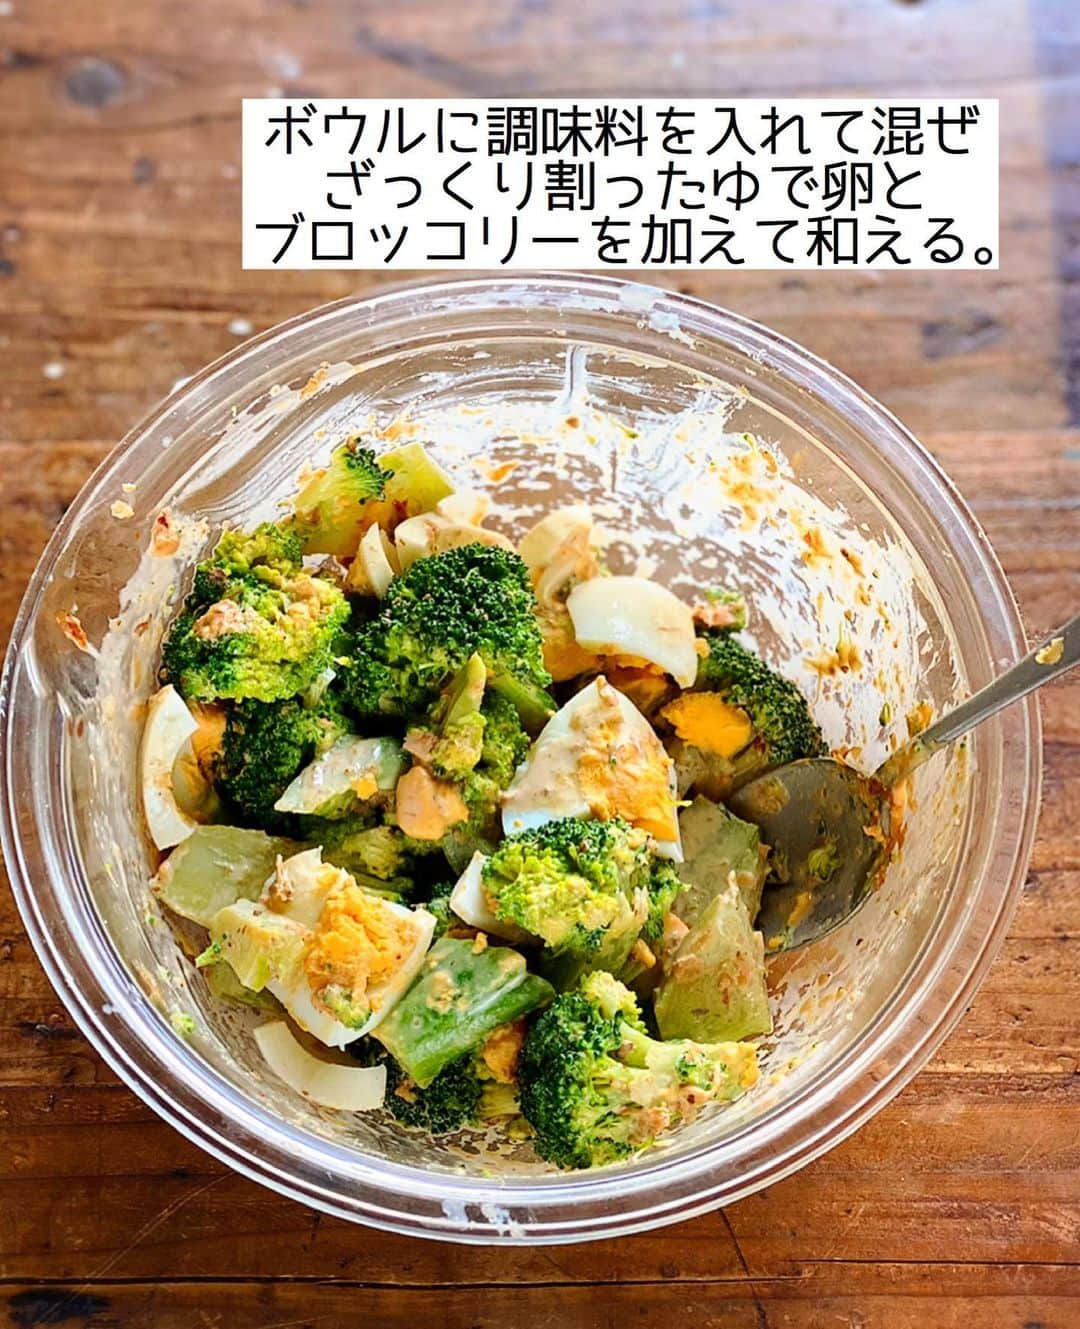 Mizuki【料理ブロガー・簡単レシピ】さんのインスタグラム写真 - (Mizuki【料理ブロガー・簡単レシピ】Instagram)「・﻿ 【#レシピ 】ーーーーーーーーーーー﻿ ブロッコリーとゆで卵の和風サラダ﻿ ーーーーーーーーーーーーーーーーー﻿ ﻿ 　﻿ ﻿ おはようございます(*^^*)﻿ ﻿ 今日ご紹介させていただくのは﻿ 簡単副菜レシピ♡﻿ \ ブロッコリーとゆで卵の和風サラダ /﻿ ﻿ ごまマヨ醤油×おかかで﻿ 風味よく仕上げました(*´艸`)﻿ 栄養たっぷりで食べ応えもあり﻿ しっかりおかずになりますよ〜♩﻿ ﻿ とっても簡単にできるので﻿ よかったらお試し下さいね(*^^*)﻿ ﻿ ﻿ ﻿ ＿＿＿＿＿＿＿＿＿＿＿＿＿＿＿＿＿＿＿＿﻿ 【2〜3人分】﻿ ブロッコリー...1房﻿ ゆで卵...2個﻿ ●かつお節...小1袋﻿ ●マヨネーズ...大3﻿ ●白すりごま...大1﻿ ●醤油・砂糖...各小1﻿ ﻿ 1.ブロッコリーは小房に分ける。塩(分量外)を加えた熱湯で茹で、ザルに上げて粗熱を取る。﻿ 2.ボウルに●を入れて混ぜ、ざっくり割ったゆで卵と1を加えて和える。﻿ ￣￣￣￣￣￣￣￣￣￣￣￣￣￣￣￣￣￣￣￣﻿ ﻿ ﻿ ﻿ 《ポイント》﻿ ♦︎ブロッコリーは水に晒さず、ザルに上げて粗熱を取ると水っぽくなりません♩﻿ ♦︎お好みで仕上げにかつお節を追加でかけても美味しいです♩﻿ ﻿ ﻿ ﻿ ﻿ ﻿ ﻿ ＿＿＿＿＿＿＿＿＿＿＿＿＿＿＿＿＿＿﻿ 🎁器プレゼントキャンペーン実施中🎁﻿ ￣￣￣￣￣￣￣￣￣￣￣￣￣￣￣￣￣￣﻿ おかげざで［今どき和食］が10刷増版となりました✨﻿ そこで心ばかりですが感謝の気持ちをお伝えしたく﻿ 《器プレゼントキャンペーンを実施中です♩》﻿ ▼ ▼ ▼﻿ ＿＿＿＿＿＿＿＿＿﻿ 【プレゼント内容】﻿ ￣￣￣￣￣￣￣￣￣﻿ 今人気の波佐見焼 大皿1枚﻿ もしくは小皿2枚セットを15名様に﻿ ＿＿＿＿＿＿＿＿＿﻿ 【応募方法】﻿ ￣￣￣￣￣￣￣￣￣﻿ ❶［Mizukiの今どき和食］から﻿ 1品ご自身で作った料理画像、﻿ もしくはカバー(表紙)画像を準備。﻿ ❷［#Mizukiの今どき和食器プレゼント ］﻿ のタグを付けて投稿！﻿ (以上で応募完了です😊　2/14〆切)﻿ _________________________________﻿ ﻿ 　﻿ ﻿ ﻿ ﻿ ﻿ ⭐️発売中⭐️﻿ ＿＿＿＿＿＿＿＿＿＿＿＿＿＿＿＿＿＿﻿ ホケミレシピの決定版♩﻿ \はじめてでも失敗しない/﻿ 📙#ホットケーキミックスのお菓子 📙﻿ ﻿ NHKまる得マガジンテキスト☆﻿ ホットケーキミックスで﻿ 📗絶品おやつ&意外なランチ📗﻿ ﻿ しんどくない献立、考えました♩﻿ \15分でいただきます/﻿ 📕#Mizukiの2品献立 📕﻿ ﻿ 和食をもっとカジュアルに♩﻿ \毎日のごはんがラクになる/﻿ 📘Mizukiの今どき和食 📘﻿ ﻿ 重版しました！﻿ ありがとうございます😭﻿ 📗ラクしておいしい！#1品晩ごはん 📗﻿ ﻿ 摂食障害から料理研究家になるまでを綴った﻿ はじめてのエッセイ本﻿ 📙普通のおいしいをつくるひと 📙﻿ ￣￣￣￣￣￣￣￣￣￣￣￣￣￣￣￣￣￣￣﻿ ﻿ ﻿ ﻿ ﻿ ﻿ ＿＿＿＿＿＿＿＿＿＿＿＿＿＿＿＿＿＿﻿ レシピを作って下さった際や﻿ レシピ本についてのご投稿には﻿ タグ付け( @mizuki_31cafe )して﻿ お知らせいただけると嬉しいです😊💕﻿ ￣￣￣￣￣￣￣￣￣￣￣￣￣￣￣￣￣￣﻿ ﻿ ﻿ ﻿ ﻿ ﻿ #副菜#サラダ#ブロッコリー#ゆで卵#おかずサラダ#Mizuki#簡単レシピ#時短レシピ#節約レシピ#料理#フーディーテーブル#マカロニメイト#おうちごはん#デリスタグラマー#料理好きな人と繋がりたい#おうちごはんlover#写真好きな人と繋がりたい#foodpic#cooking#recipe#lin_stagrammer#foodporn#yummy#f52grams#ブロッコリーとゆで卵の和風サラダm」2月13日 8時14分 - mizuki_31cafe